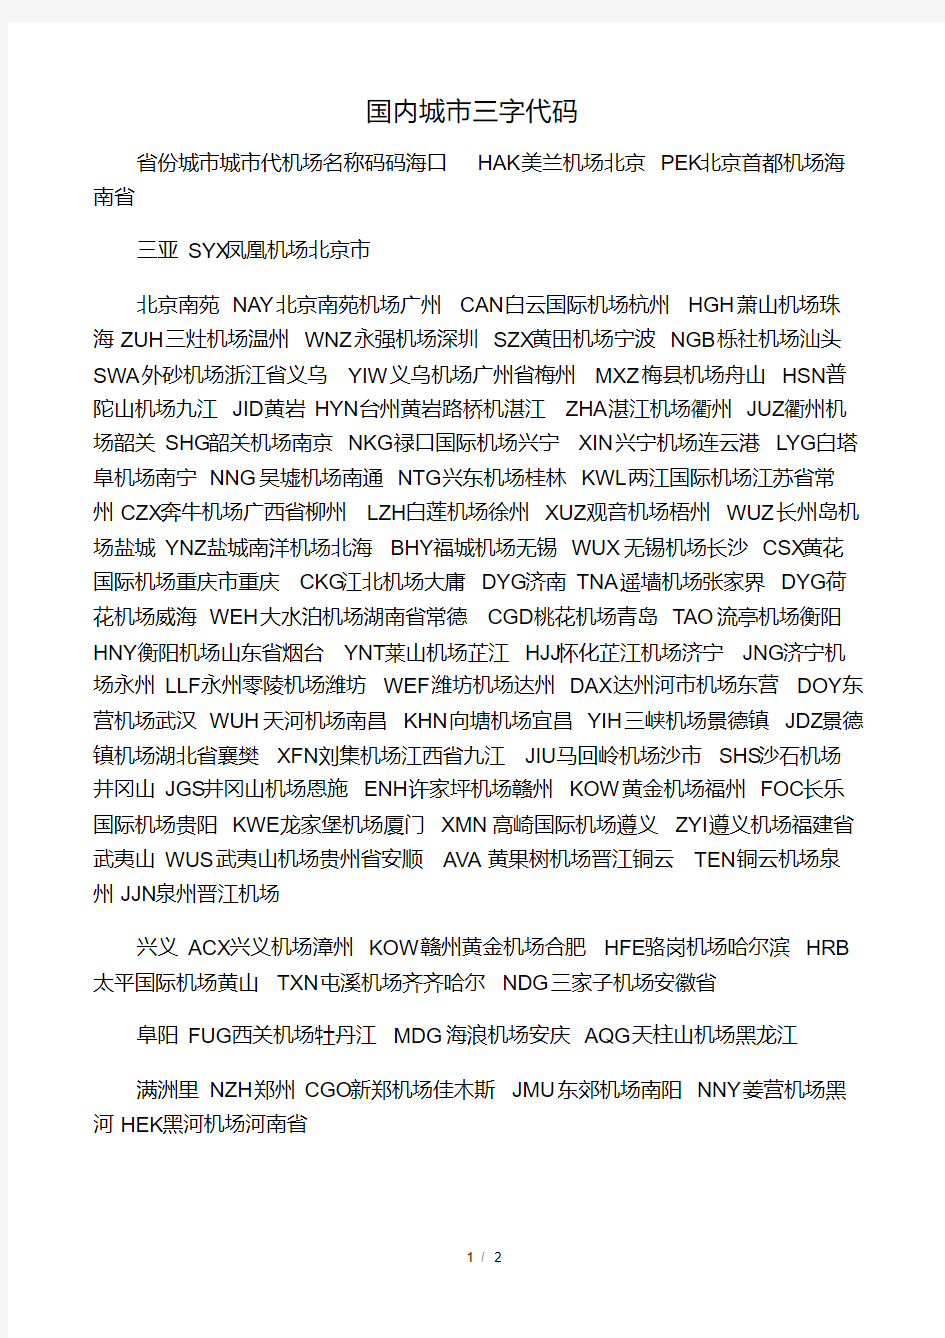 中国各大城市航空三字代码.pdf